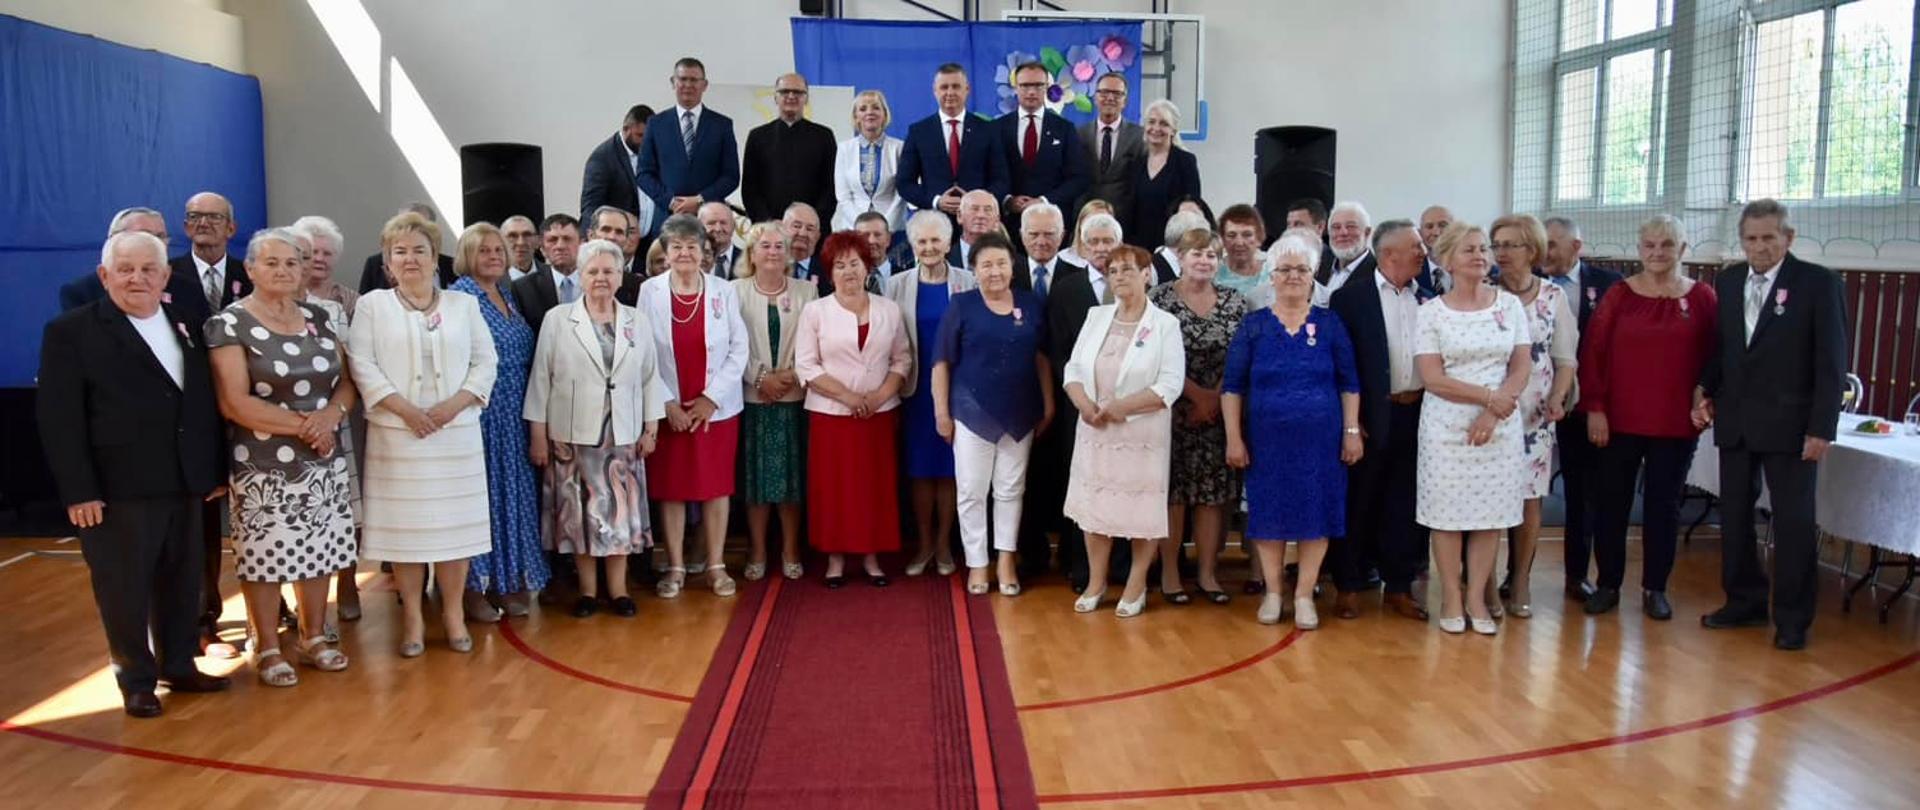 21 par z Jedlińska świętowało 50-lecie małżeństwa 